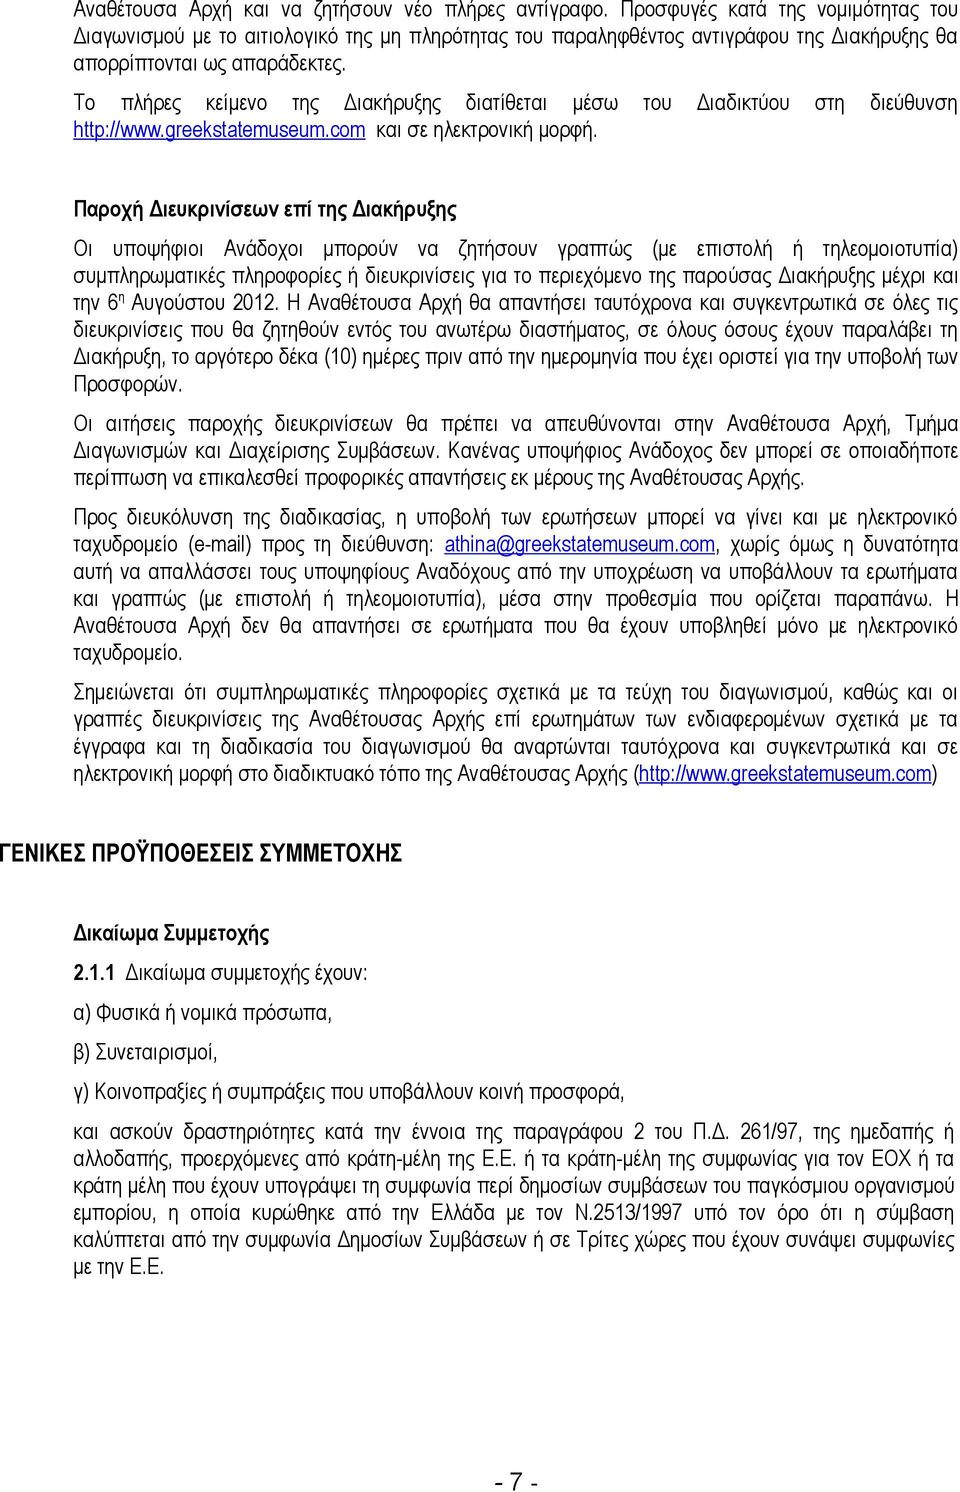 Το πλήρες κείμενο της Διακήρυξης διατίθεται μέσω του Διαδικτύου στη διεύθυνση http ://www.greekstatemuseum.com και σε ηλεκτρονική μορφή.